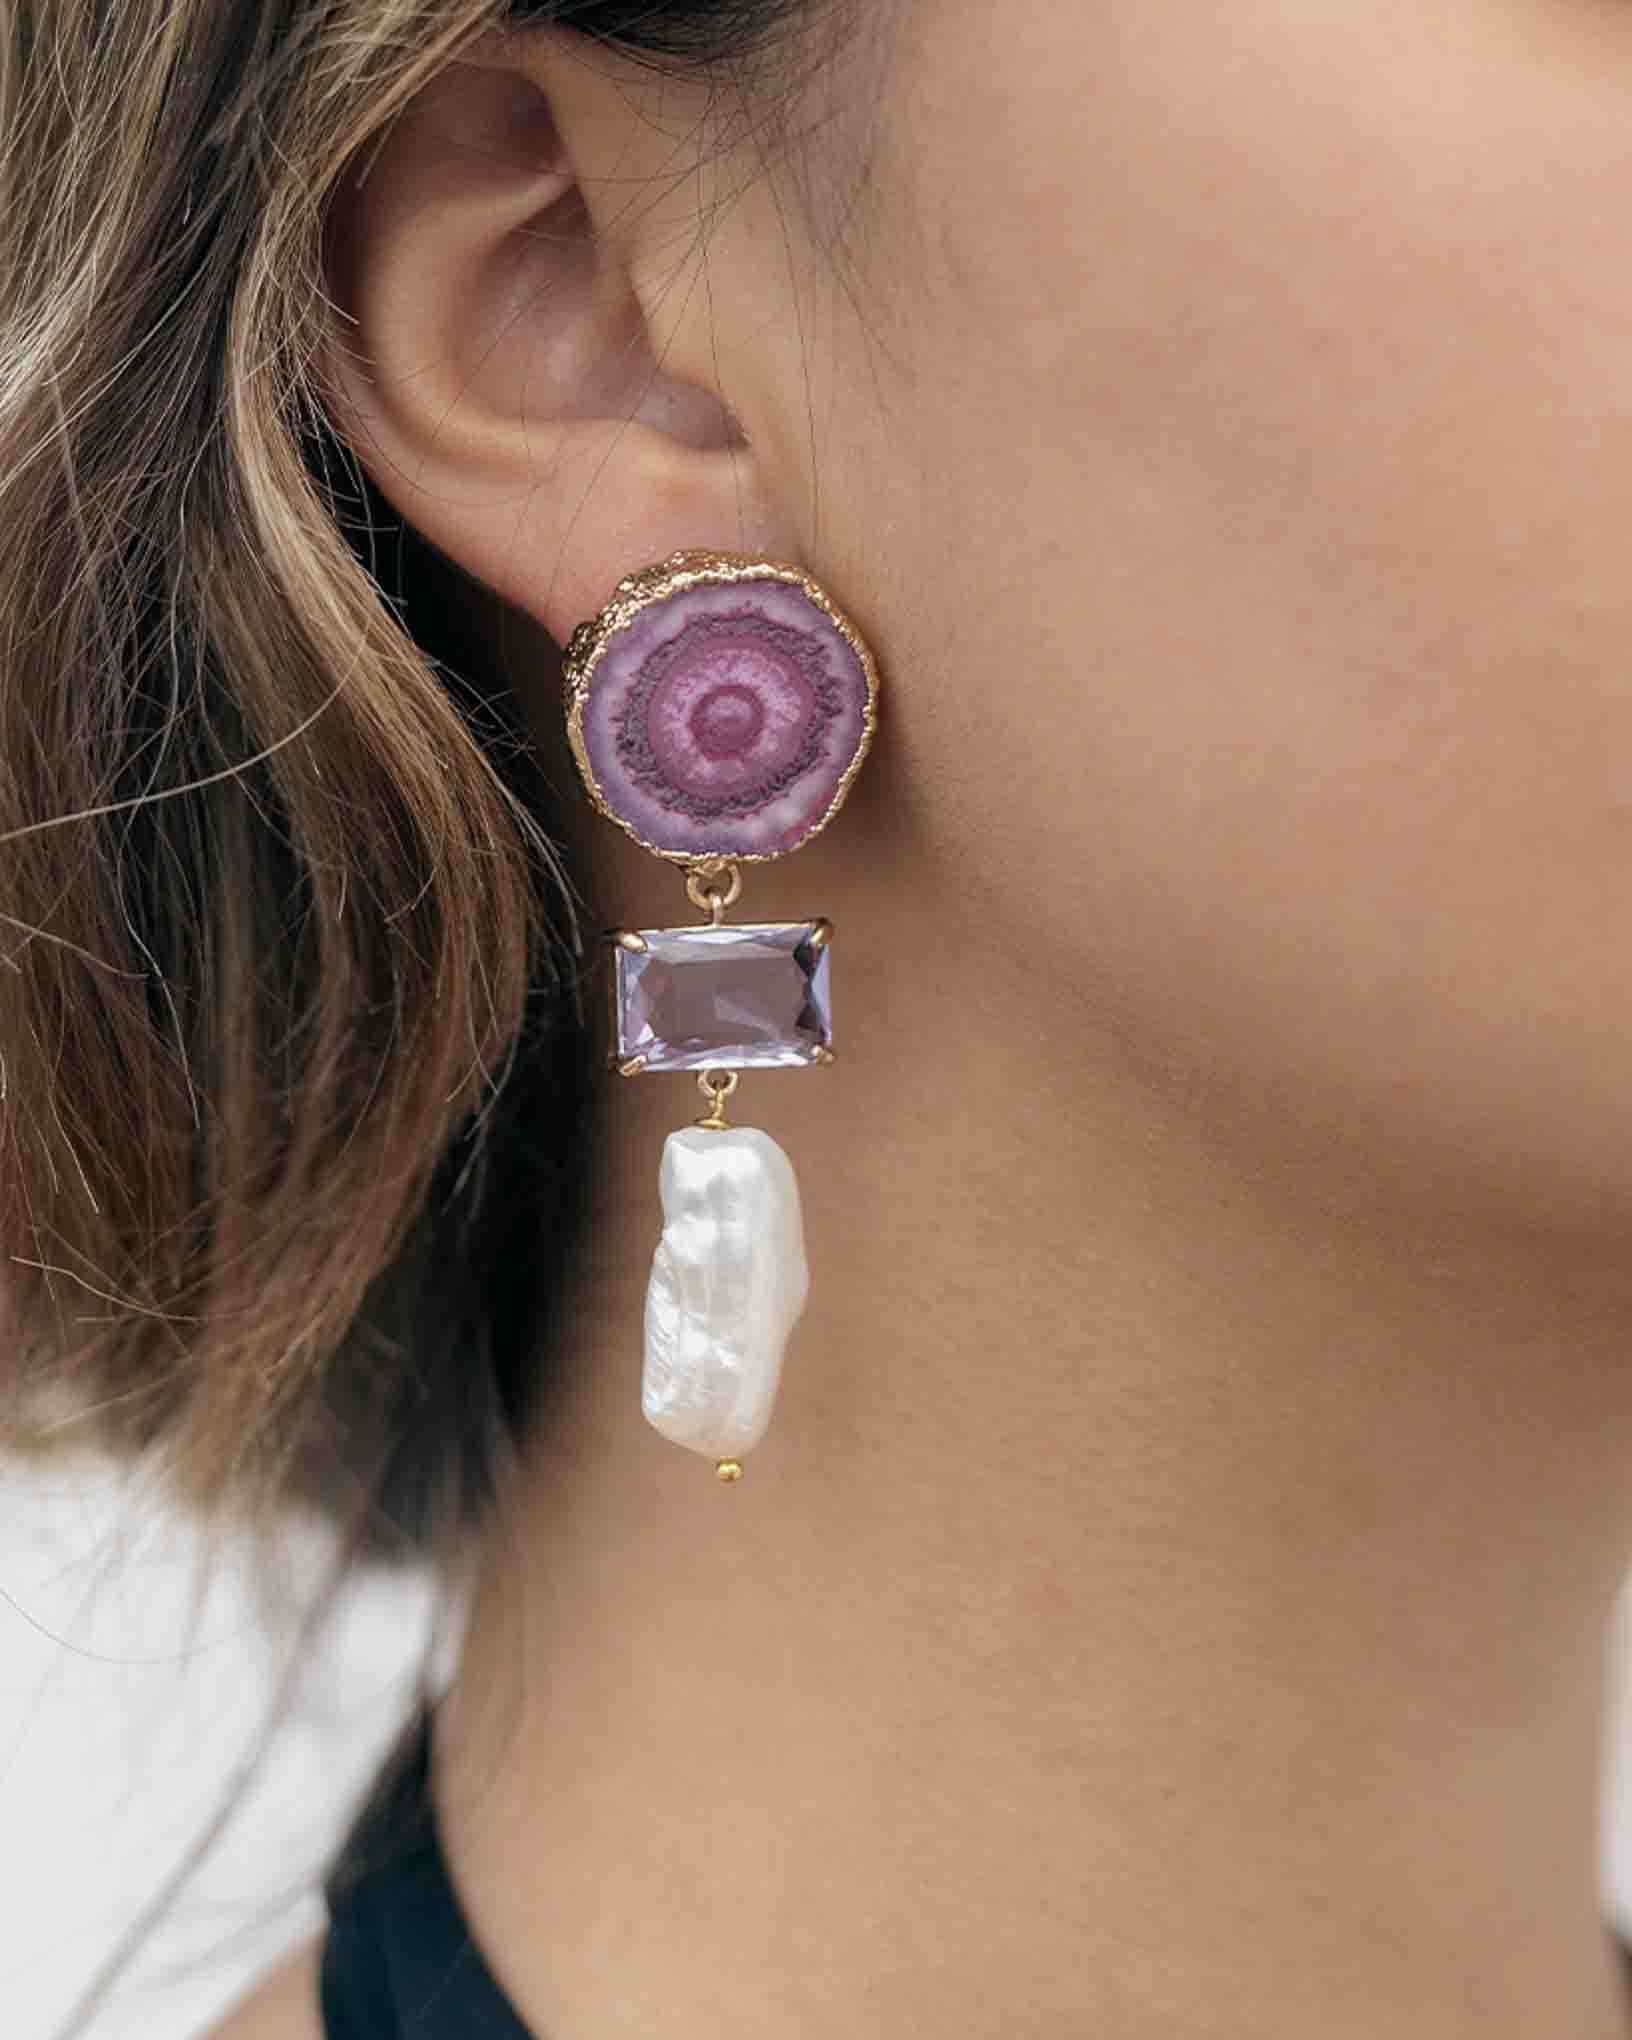 Ohrring Uranio aus der Kollektion Galassia von Donna Rachele Jewelry